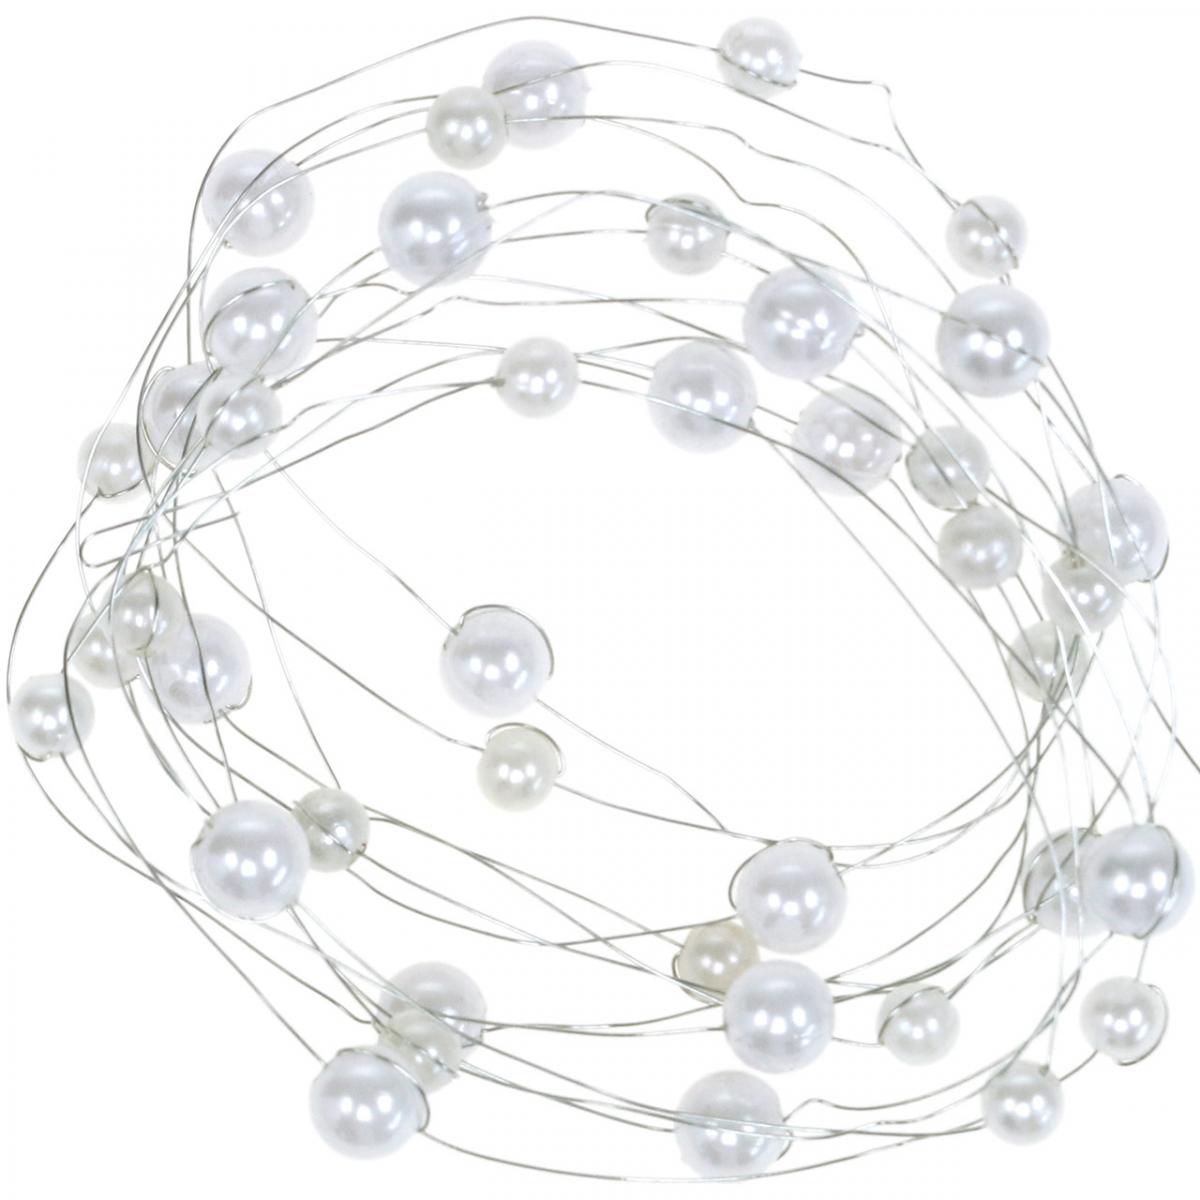 8mm Perle Artificiali Corde Perline Catena Perla Ghirlanda Rotolo per Decorazione della Festa Nuziale Fai da Te Bianca HEEPDD 60m / Roll Perline Filo di Perle 3mm 